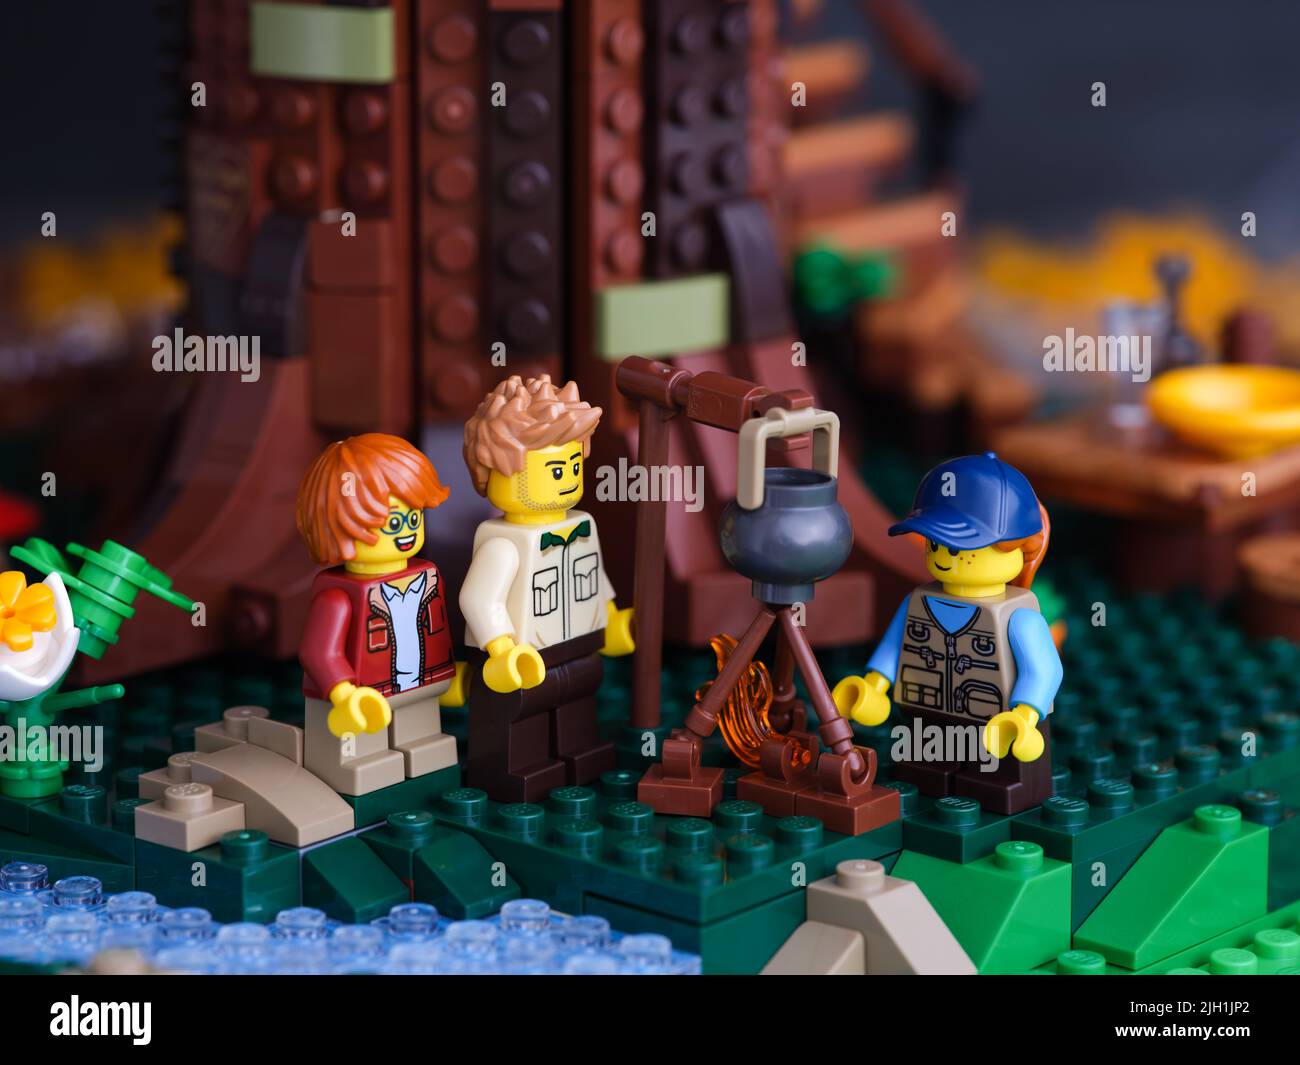 Tambow, Russische Föderation - 22. Juni 2022 drei Lego Minifiguren - Vater und zwei Kinder, stehen unter einem Baum und kochen am Lagerfeuer. Stockfoto